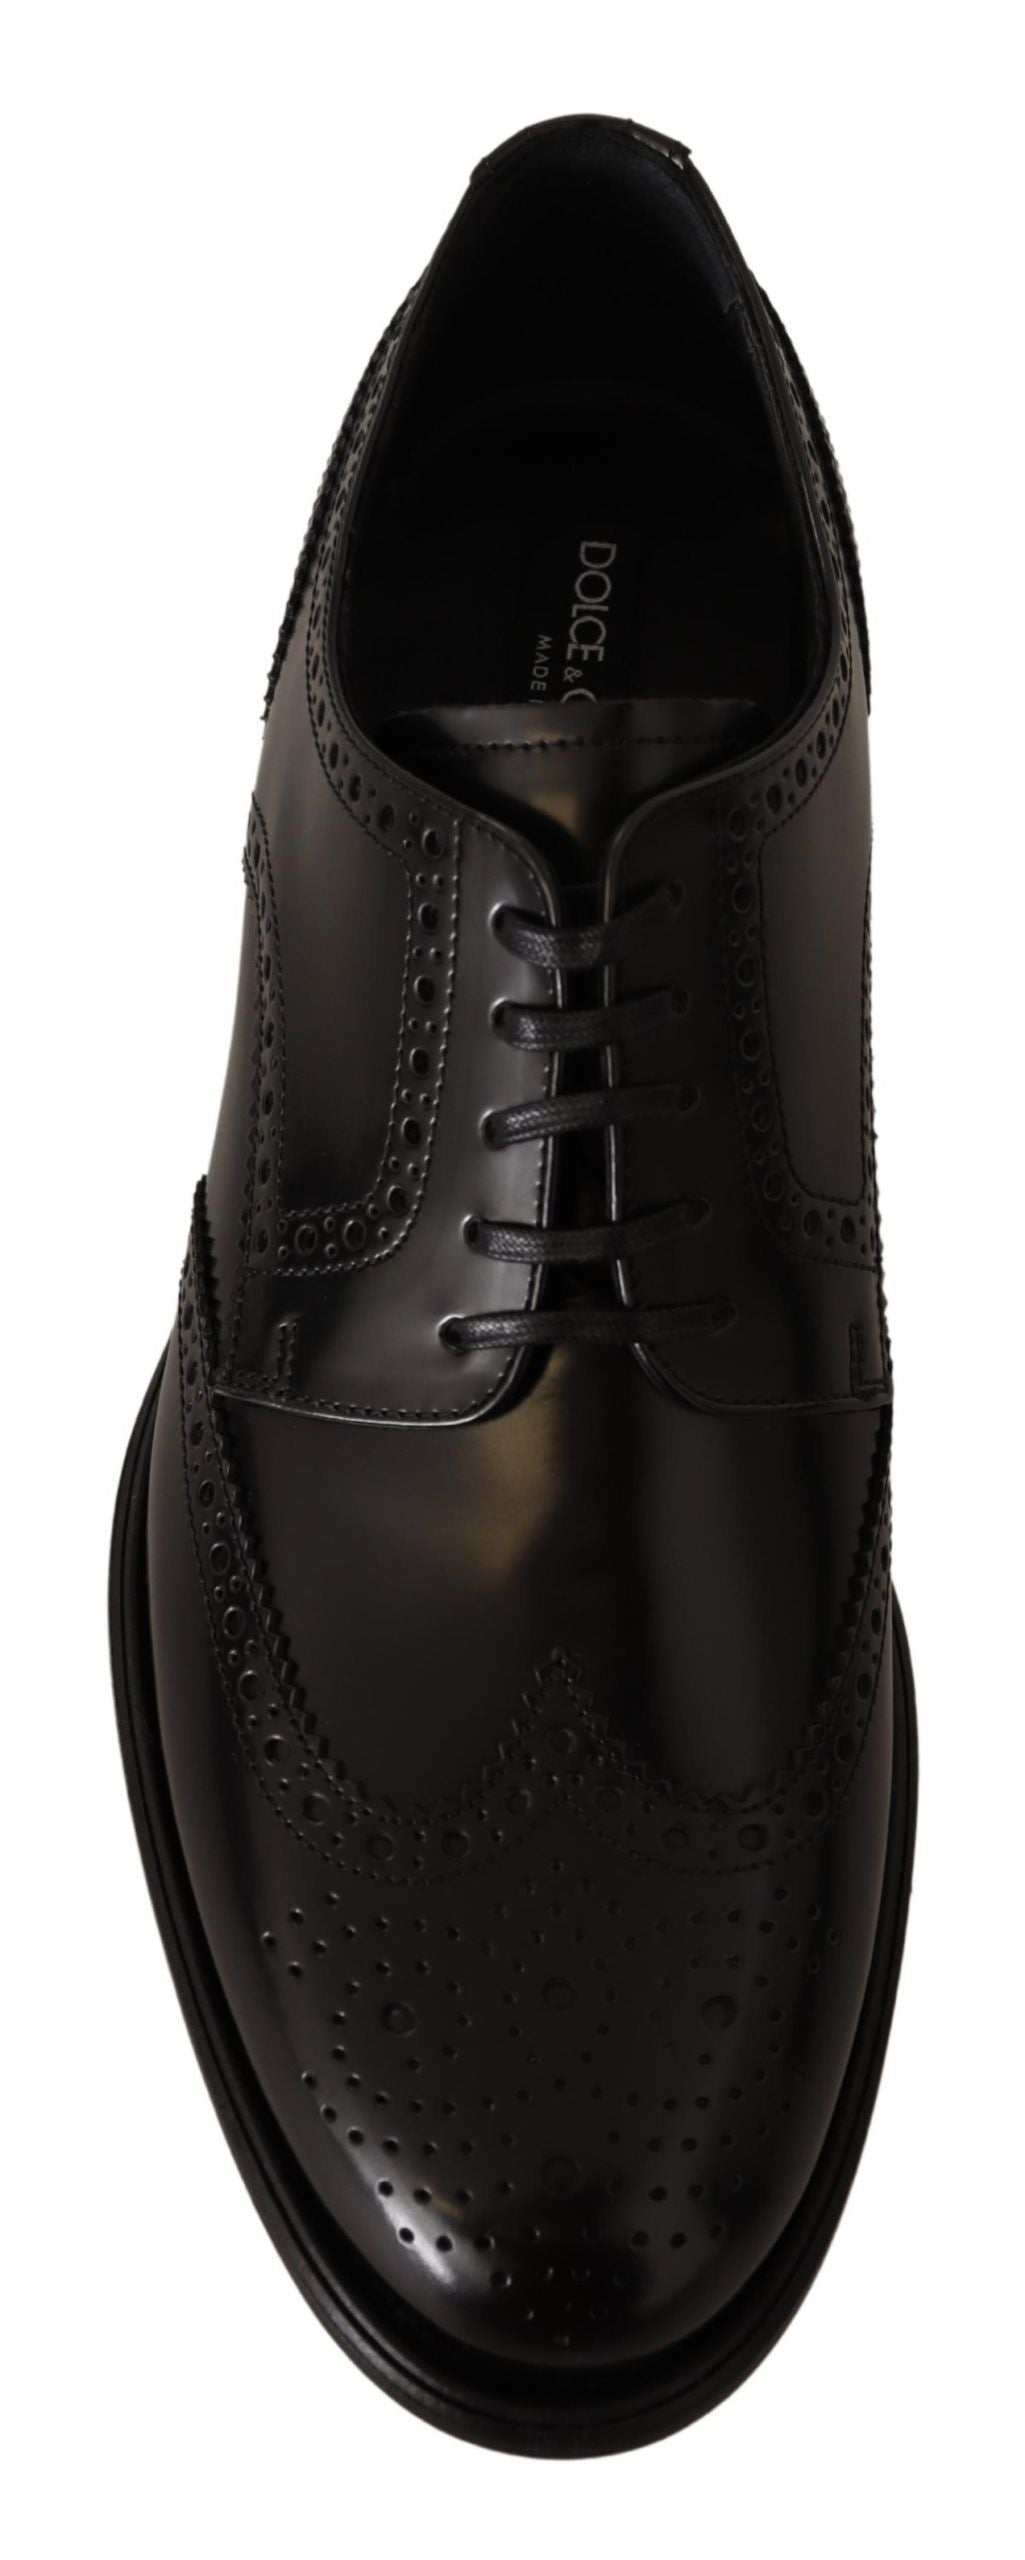 Elegant Wingtip Derby Oxford Shoes